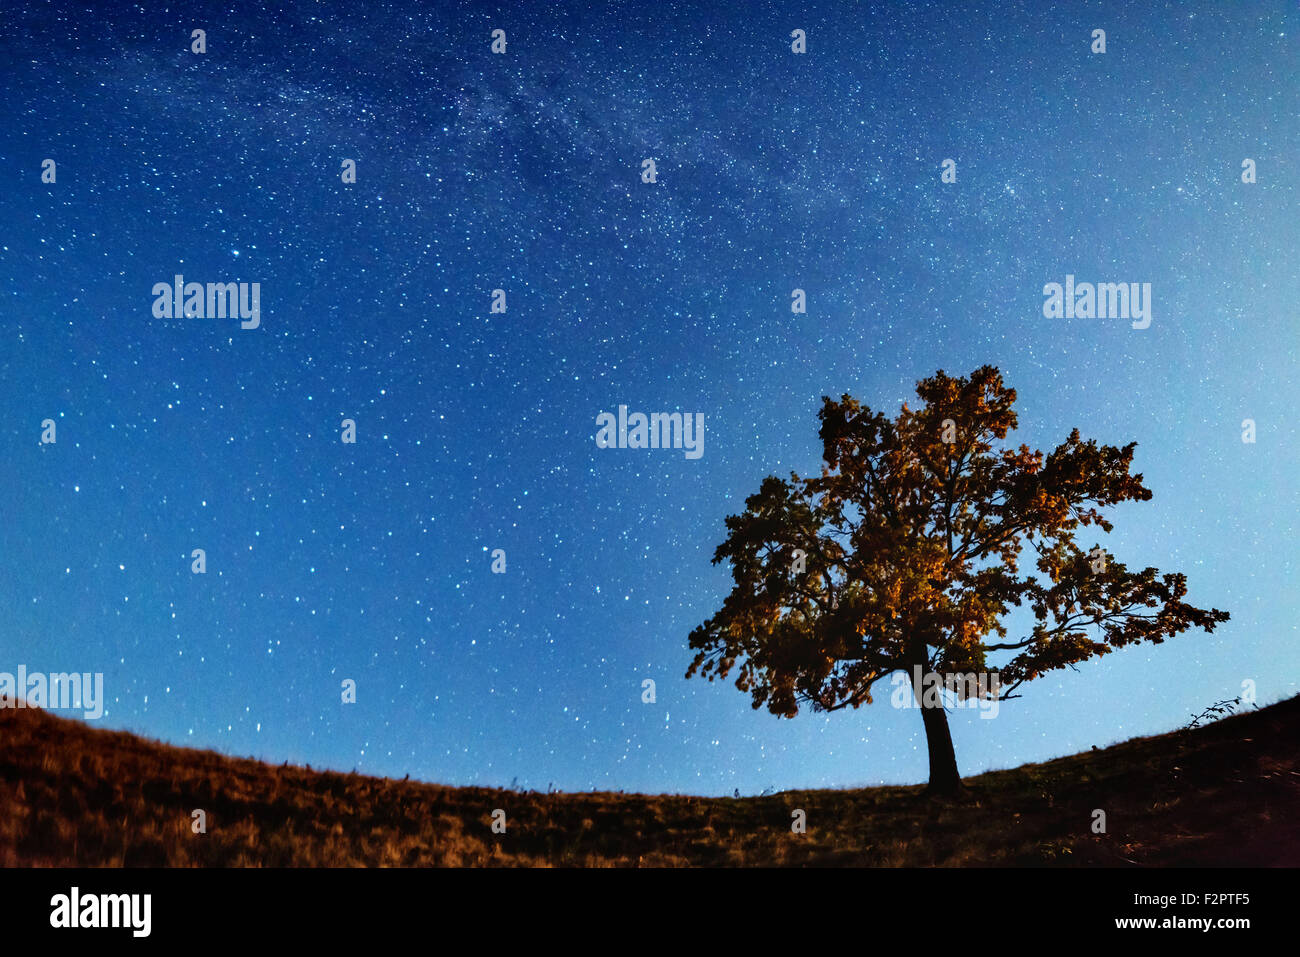 La Via Lattea oltre la sola silhouette ad albero. Carpazi, Ucraina, l'Europa. Foto Stock